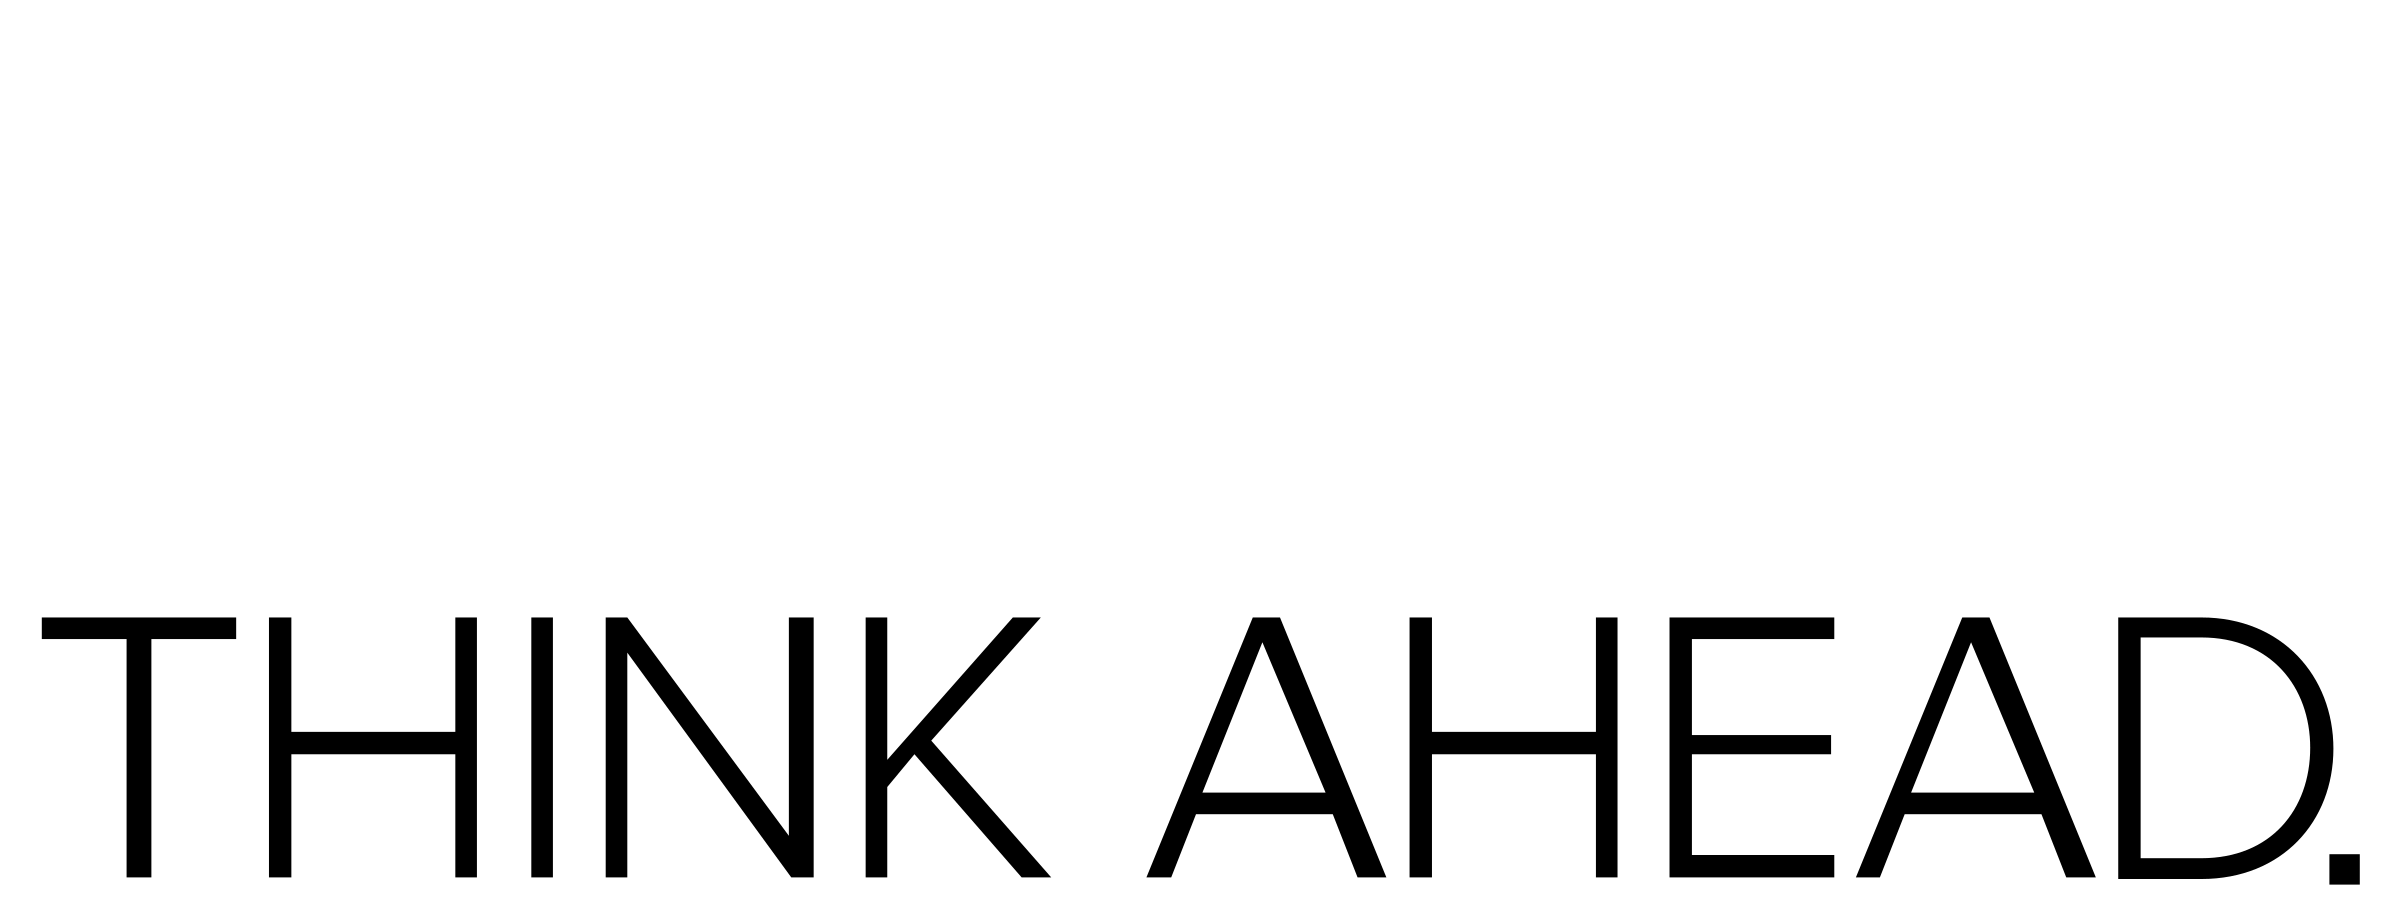 Acquia Logo - Acquia Logo PNG Transparent & SVG Vector - Freebie Supply